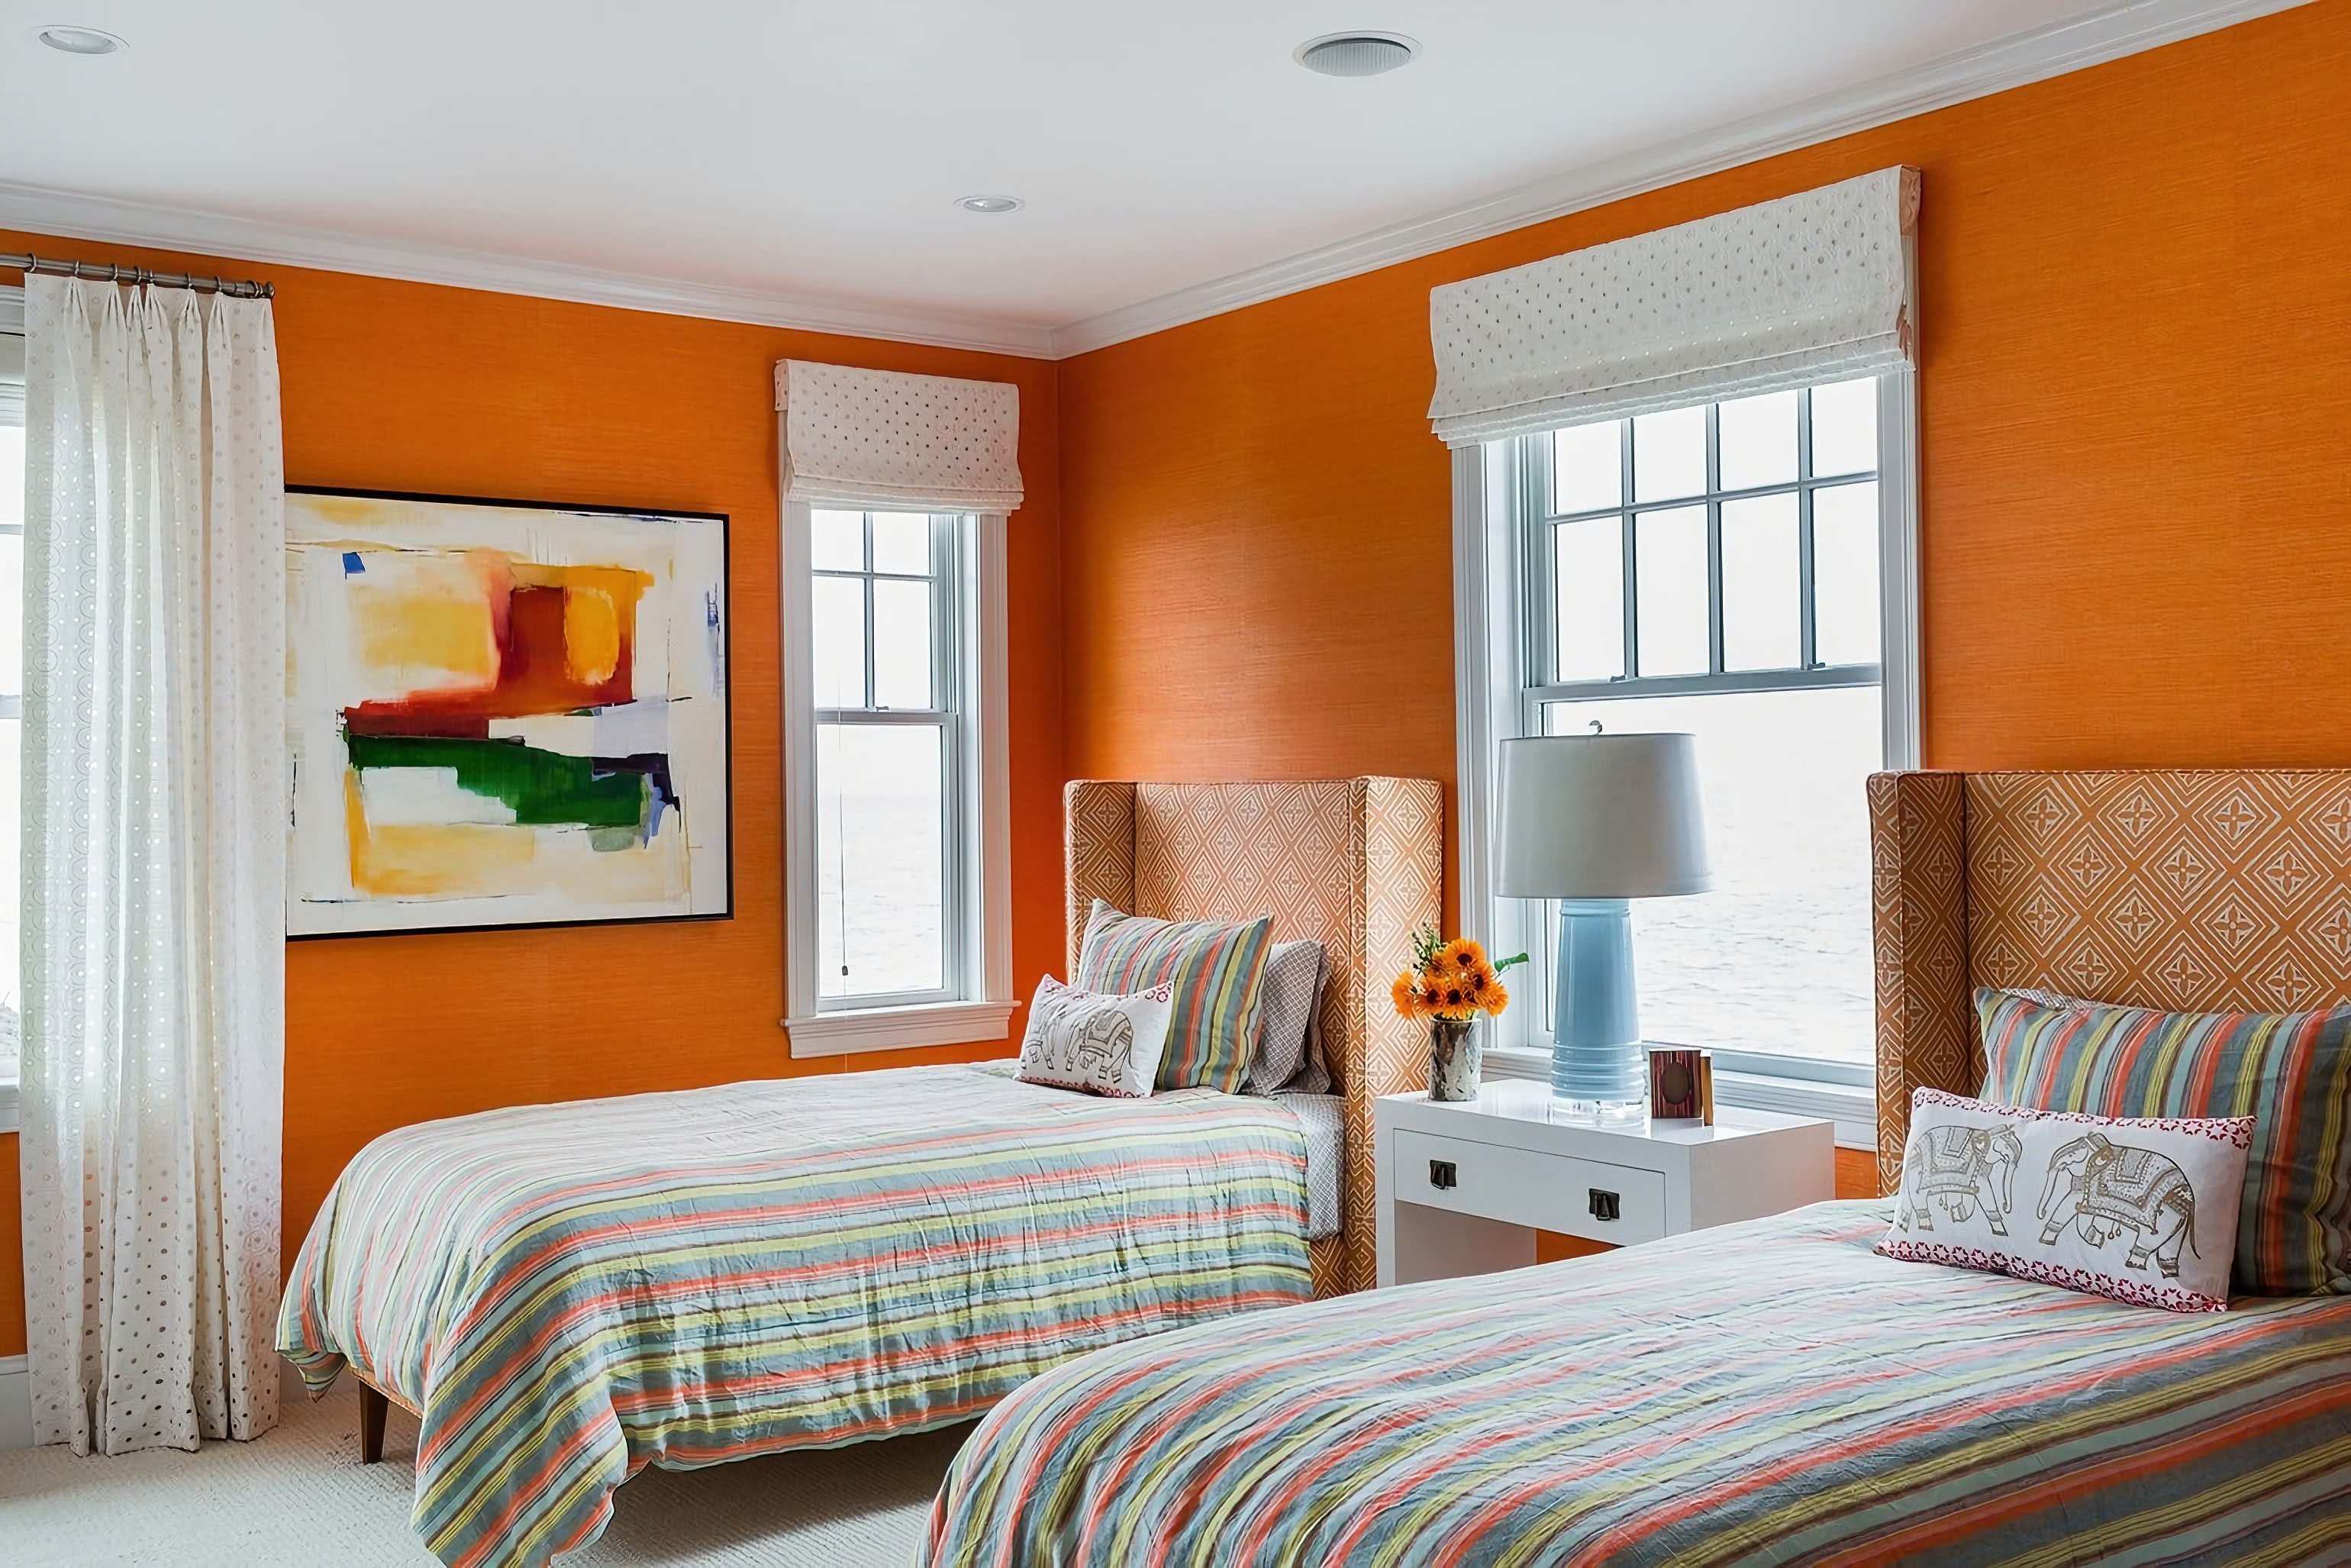 Комната с оранжевыми обоями